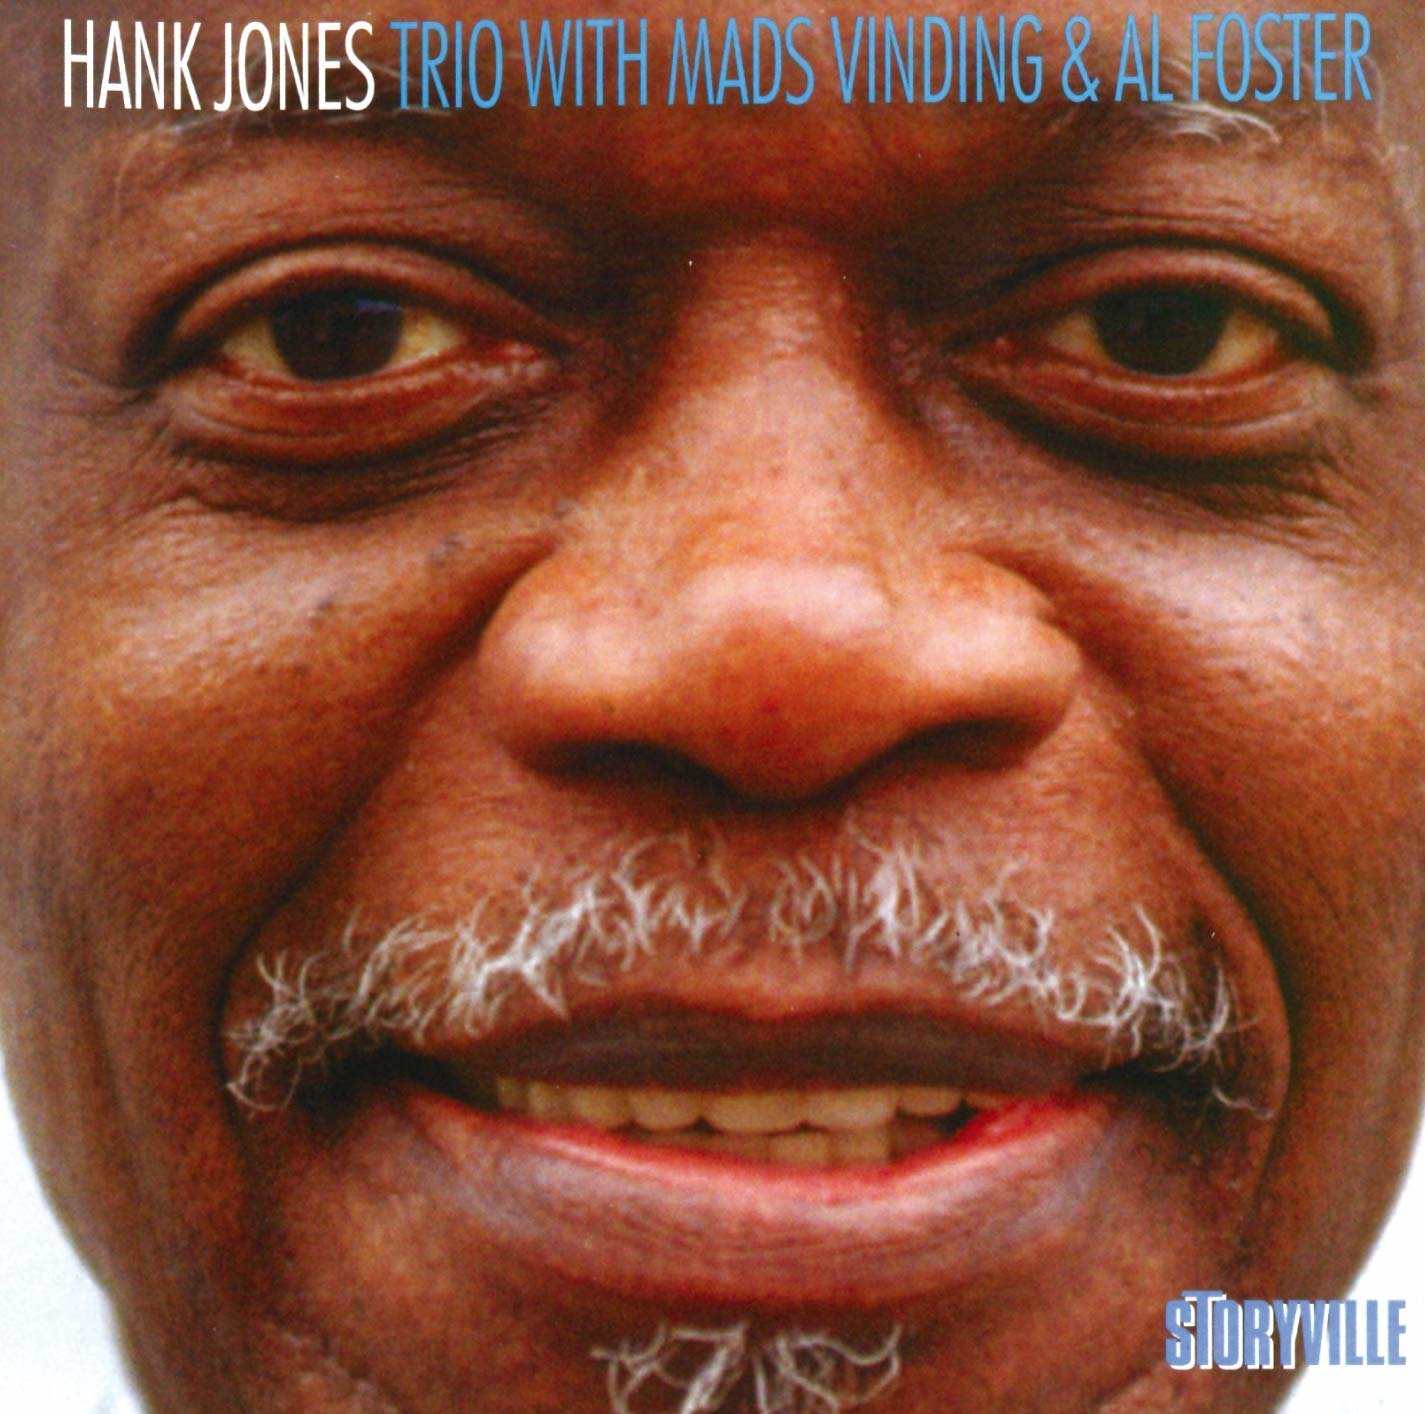 CD Shop - JONES, HANK TRIO WITH MADS VINDING & AL FOSTER